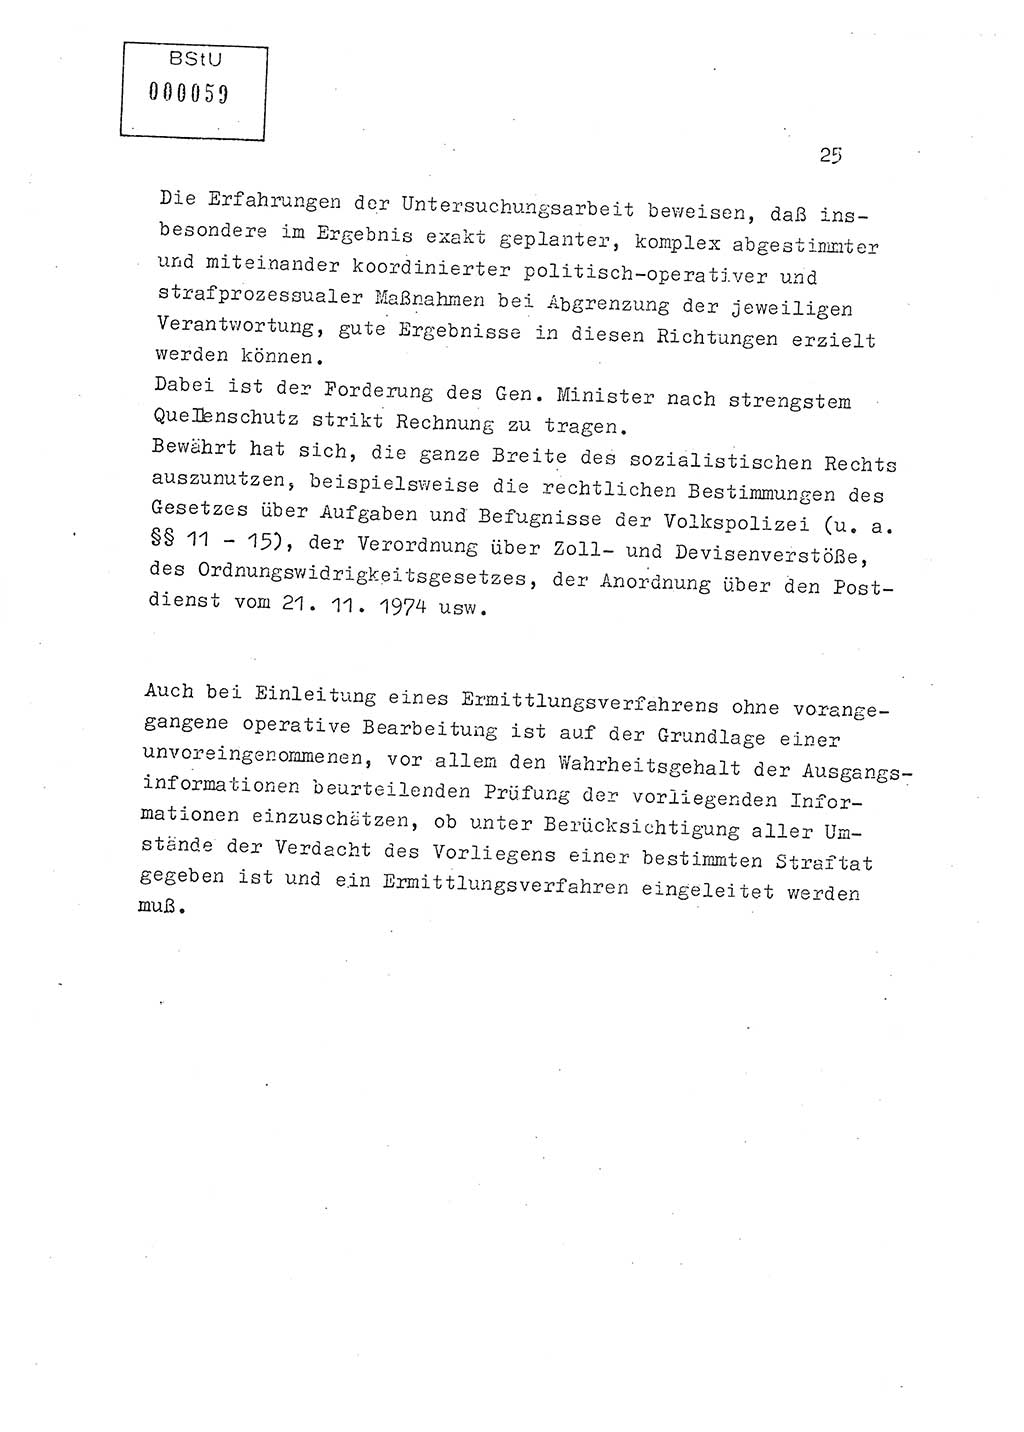 Lektion Ministerium für Staatssicherheit (MfS) [Deutsche Demokratische Republik (DDR)], Hauptabteilung (HA) Ⅸ, Berlin 1979, Seite 25 (Lekt. Bew.-Fü. EV MfS DDR HA Ⅸ 1979, S. 25)